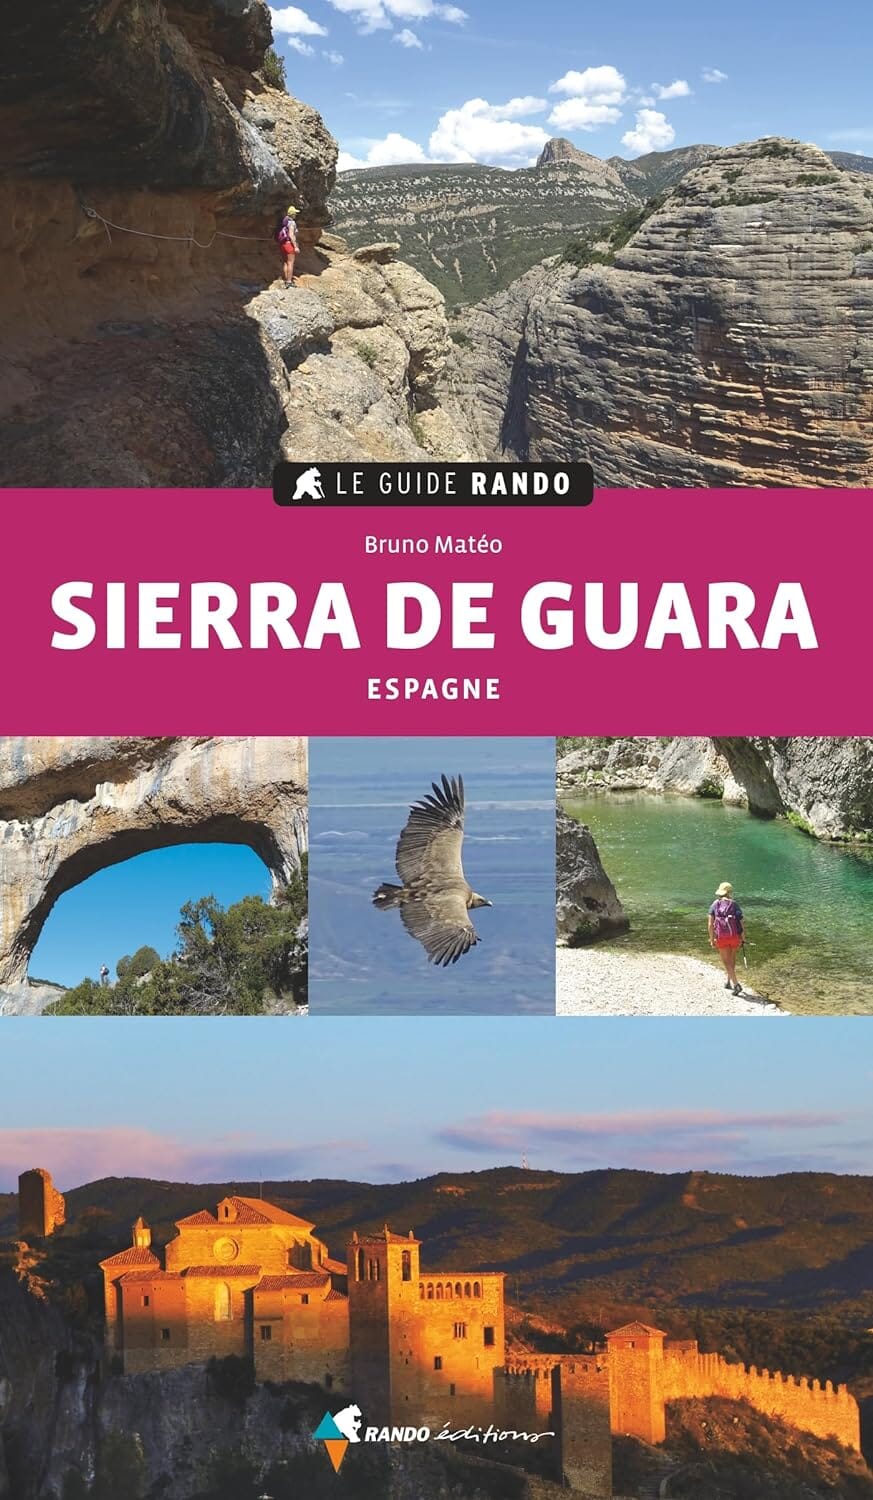 Le Guide Rando - Sierra de Guara | Rando Editions guide de randonnée Rando Editions 